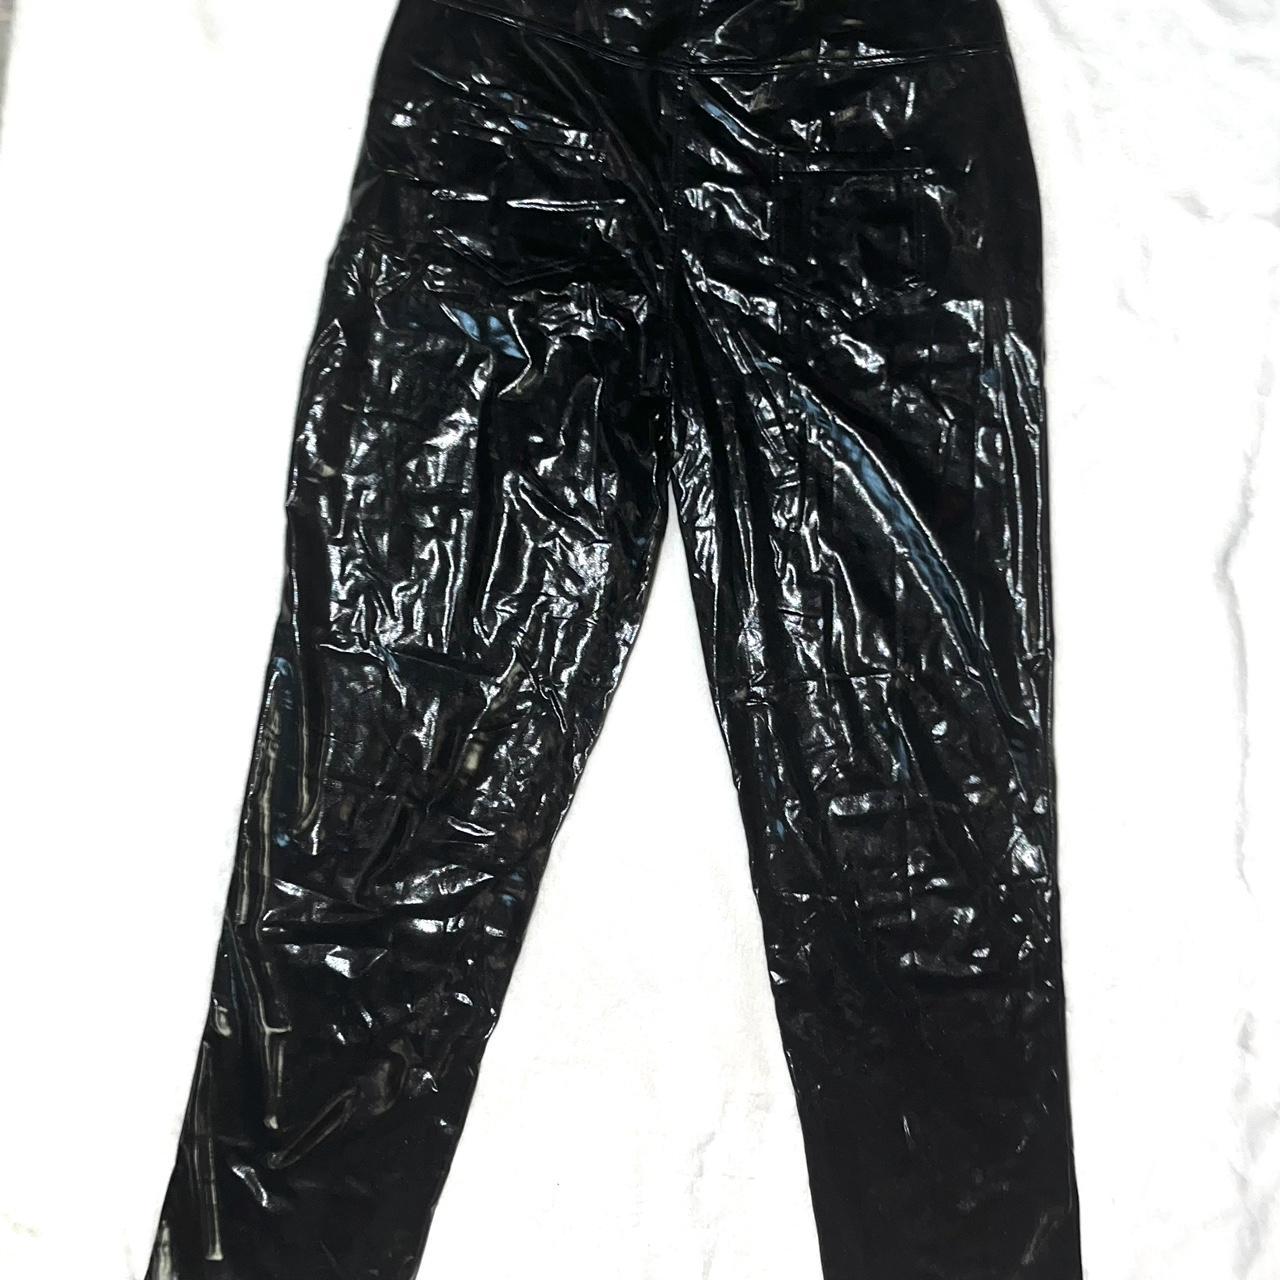 Vinyl baggy pants - black vinyl shiny jeans Size:... - Depop